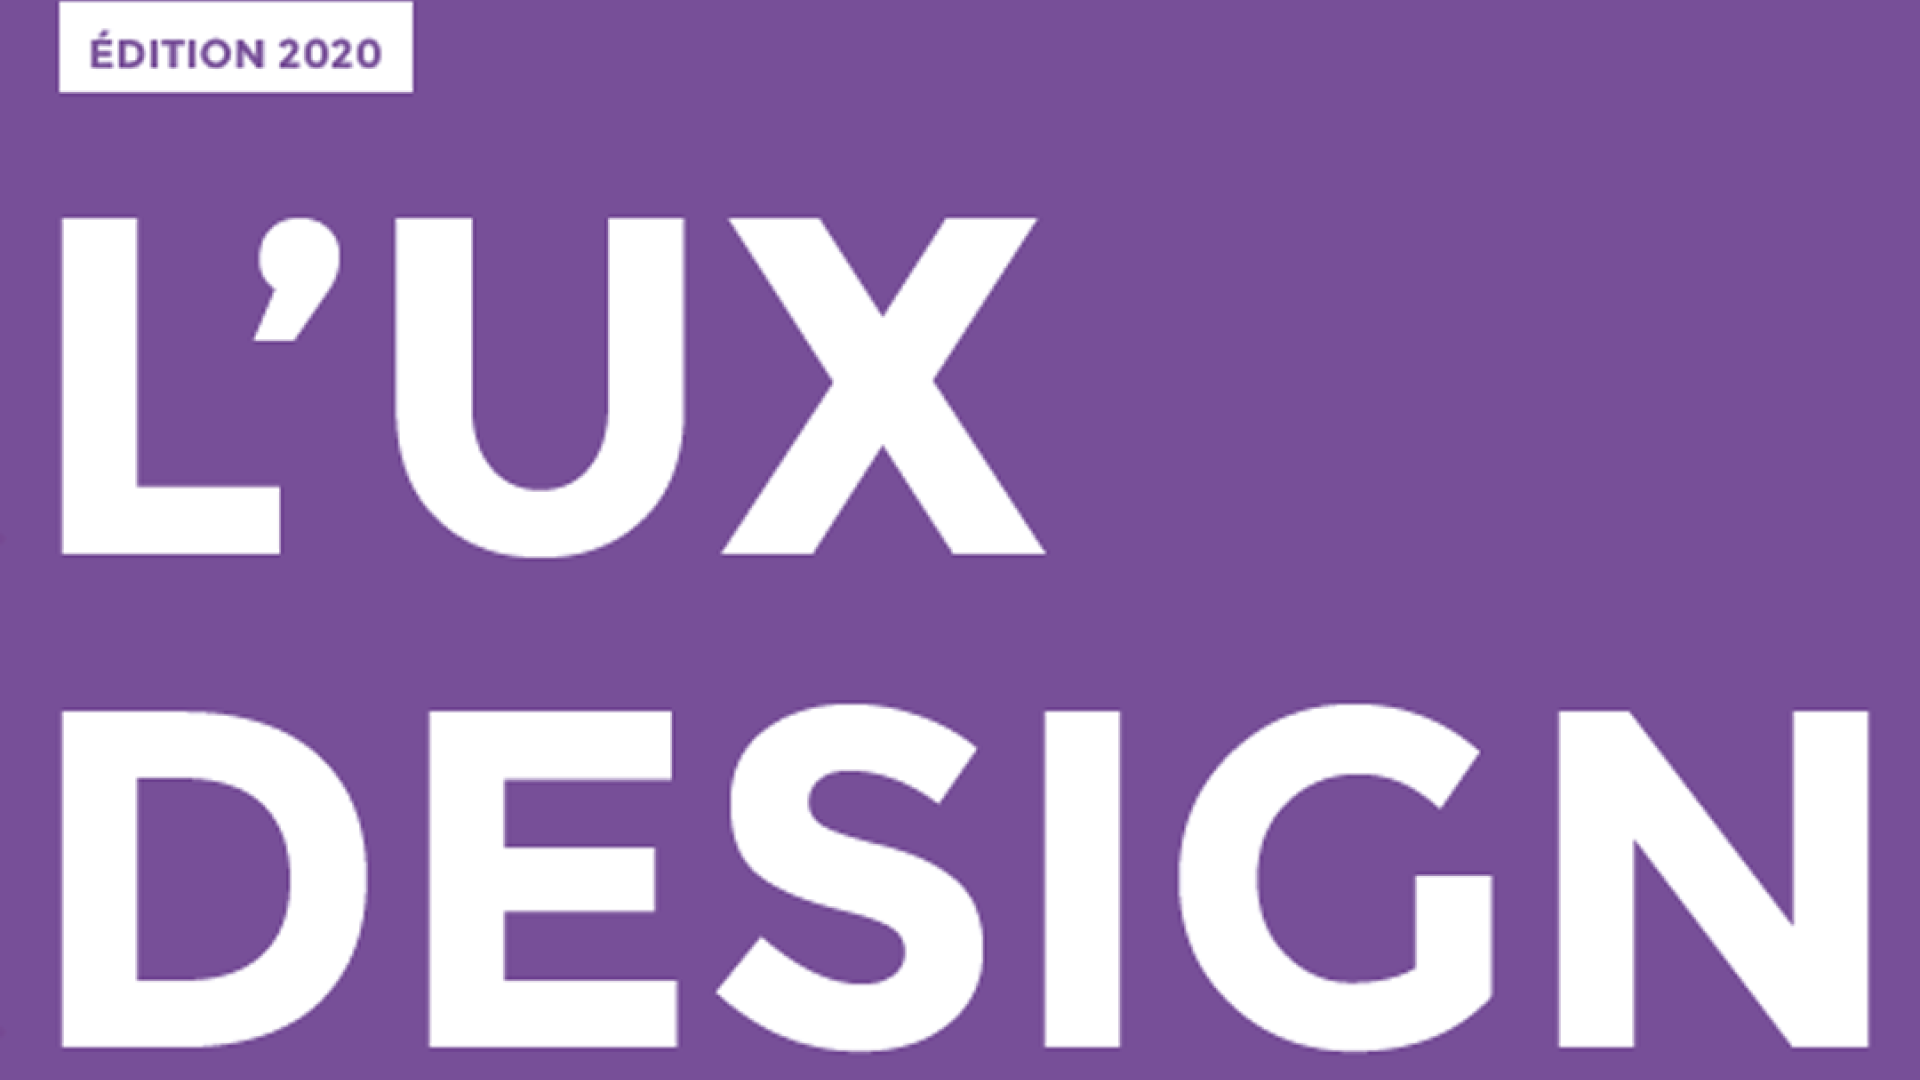 UX Design 2020